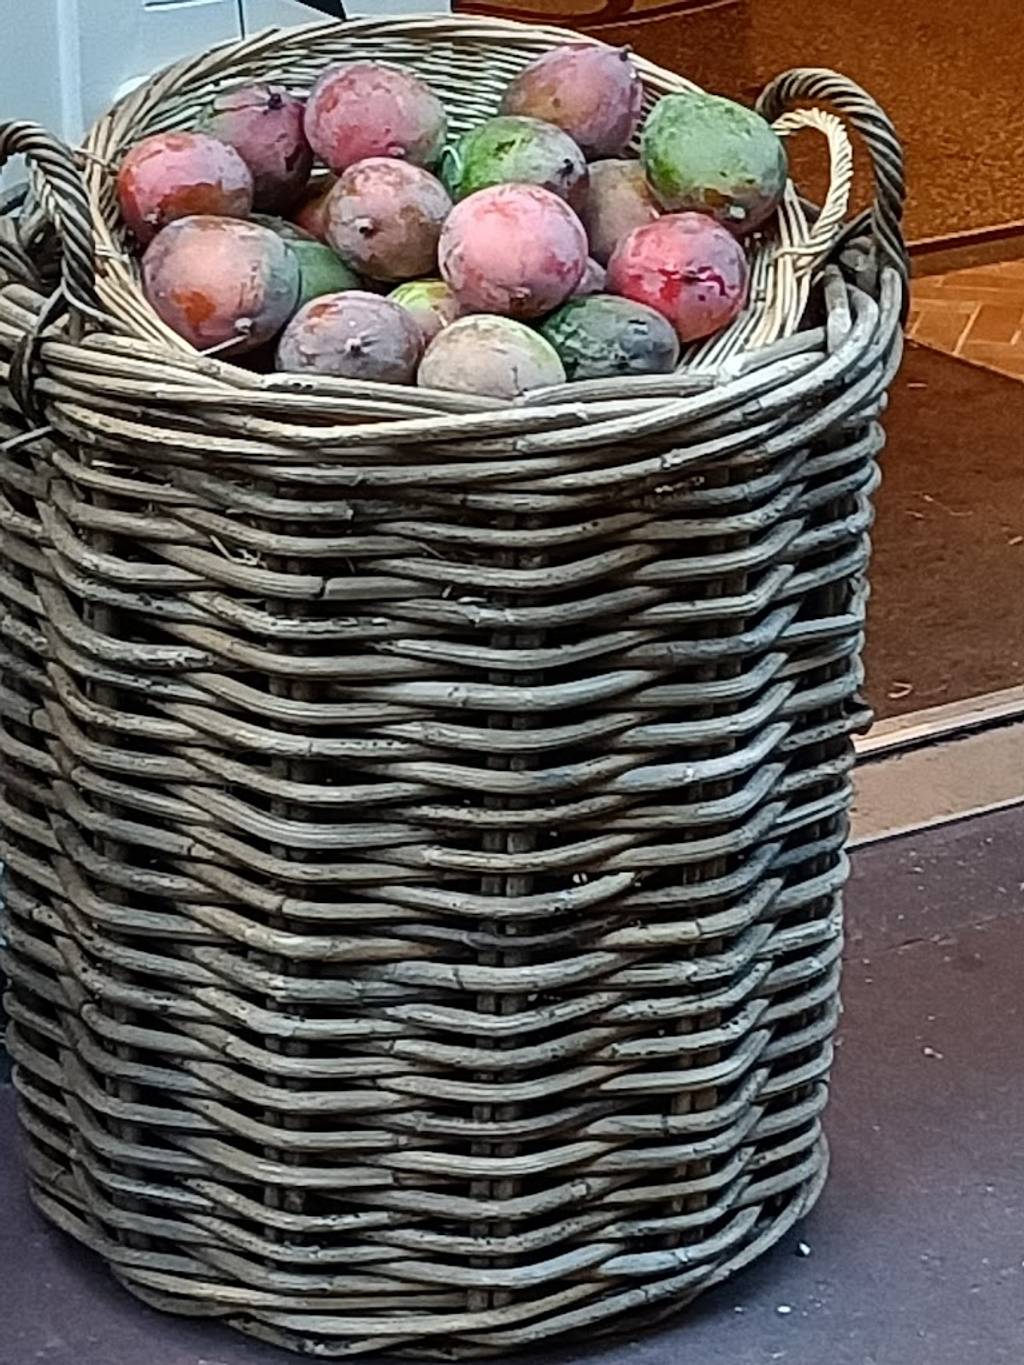 SO'FOOD Place Cauchoise Rouen - Food Plant Fruit Basket Storage basket